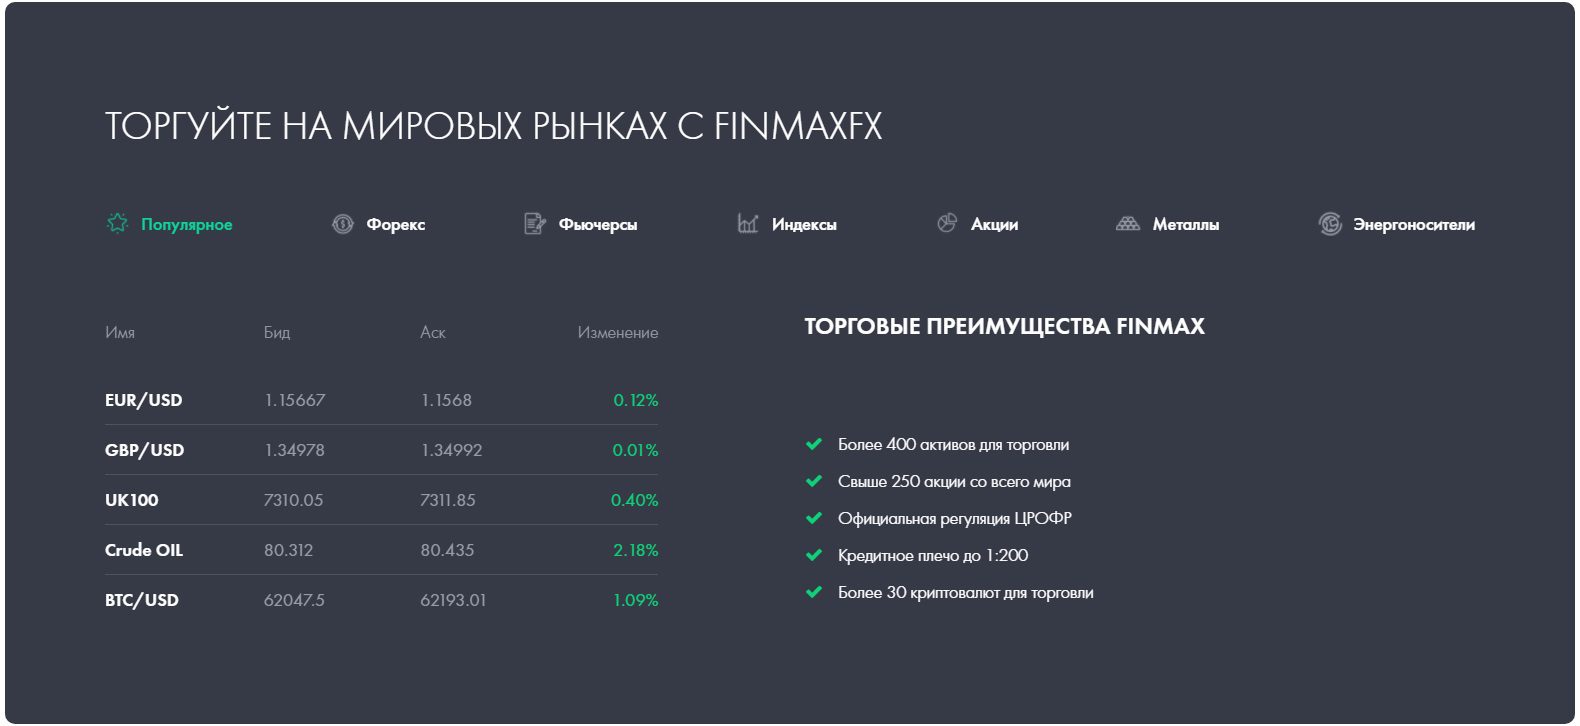 Сайт проекта Finmax